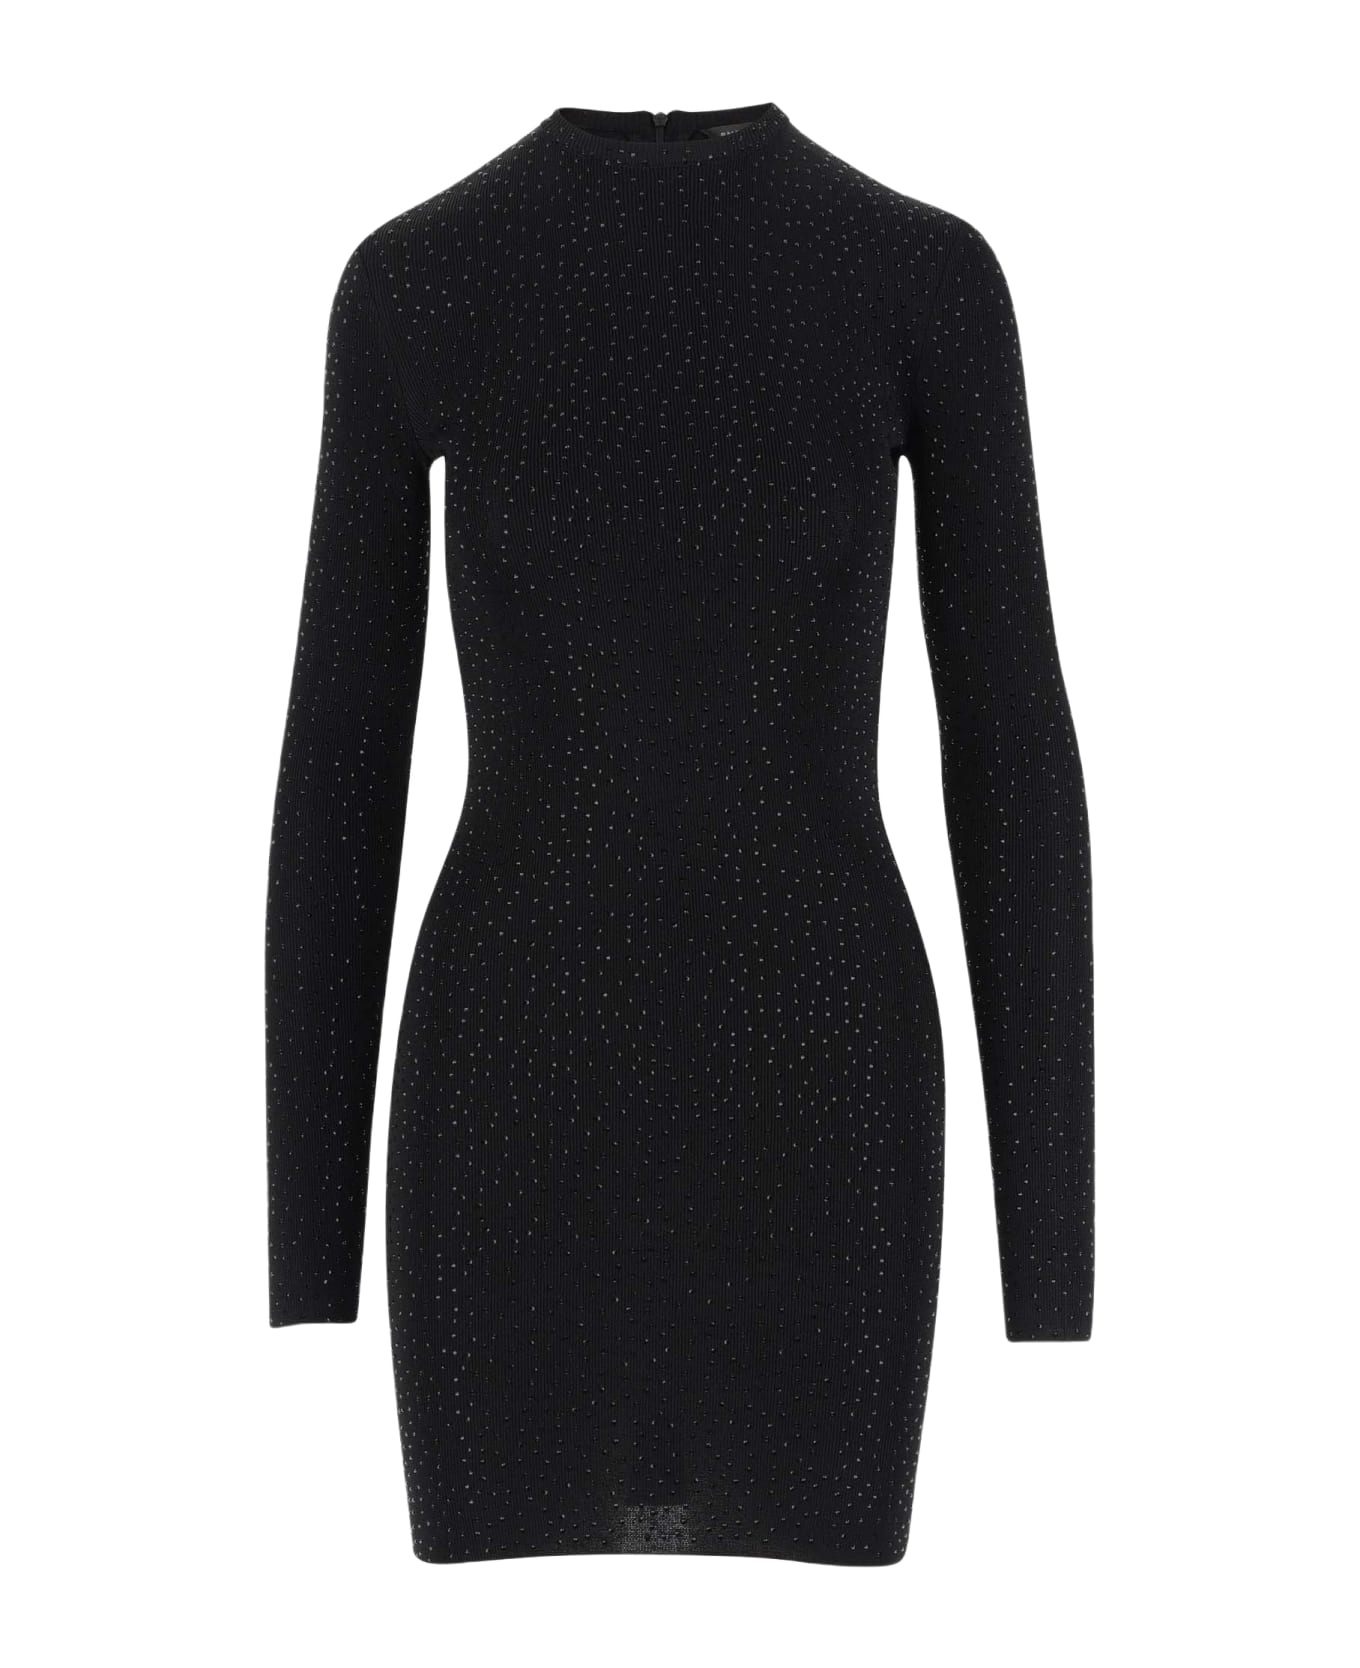 Balenciaga Stretch Viscose Dress - Black